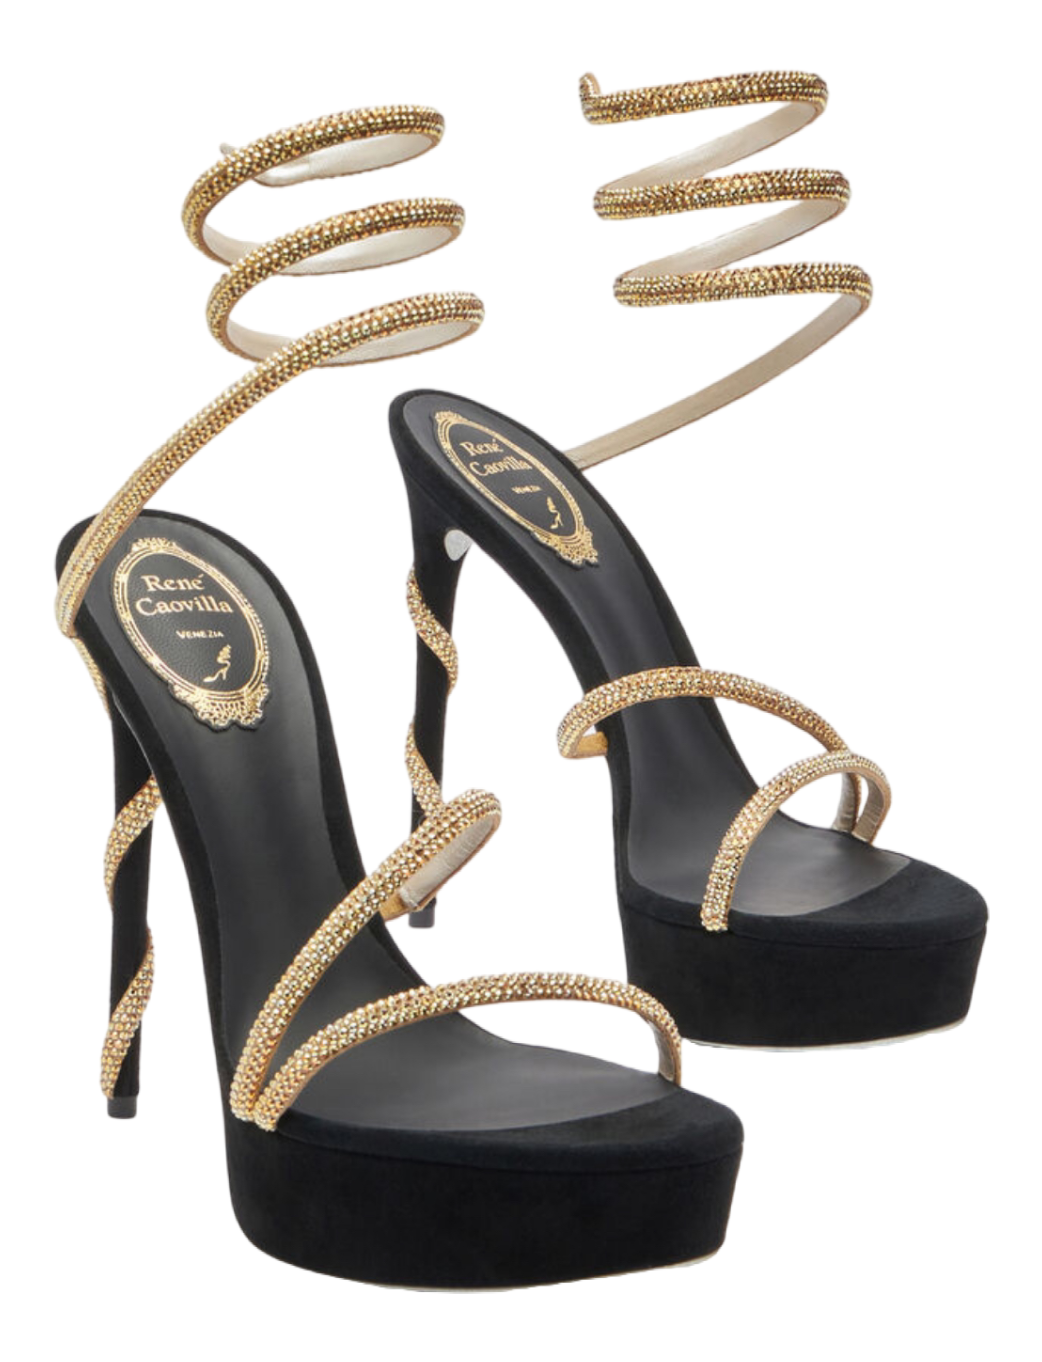 Închiriere sandale Rene Caviolla MARGOT CRYSTAL BLACK-GOLD PLATFORM SANDAL